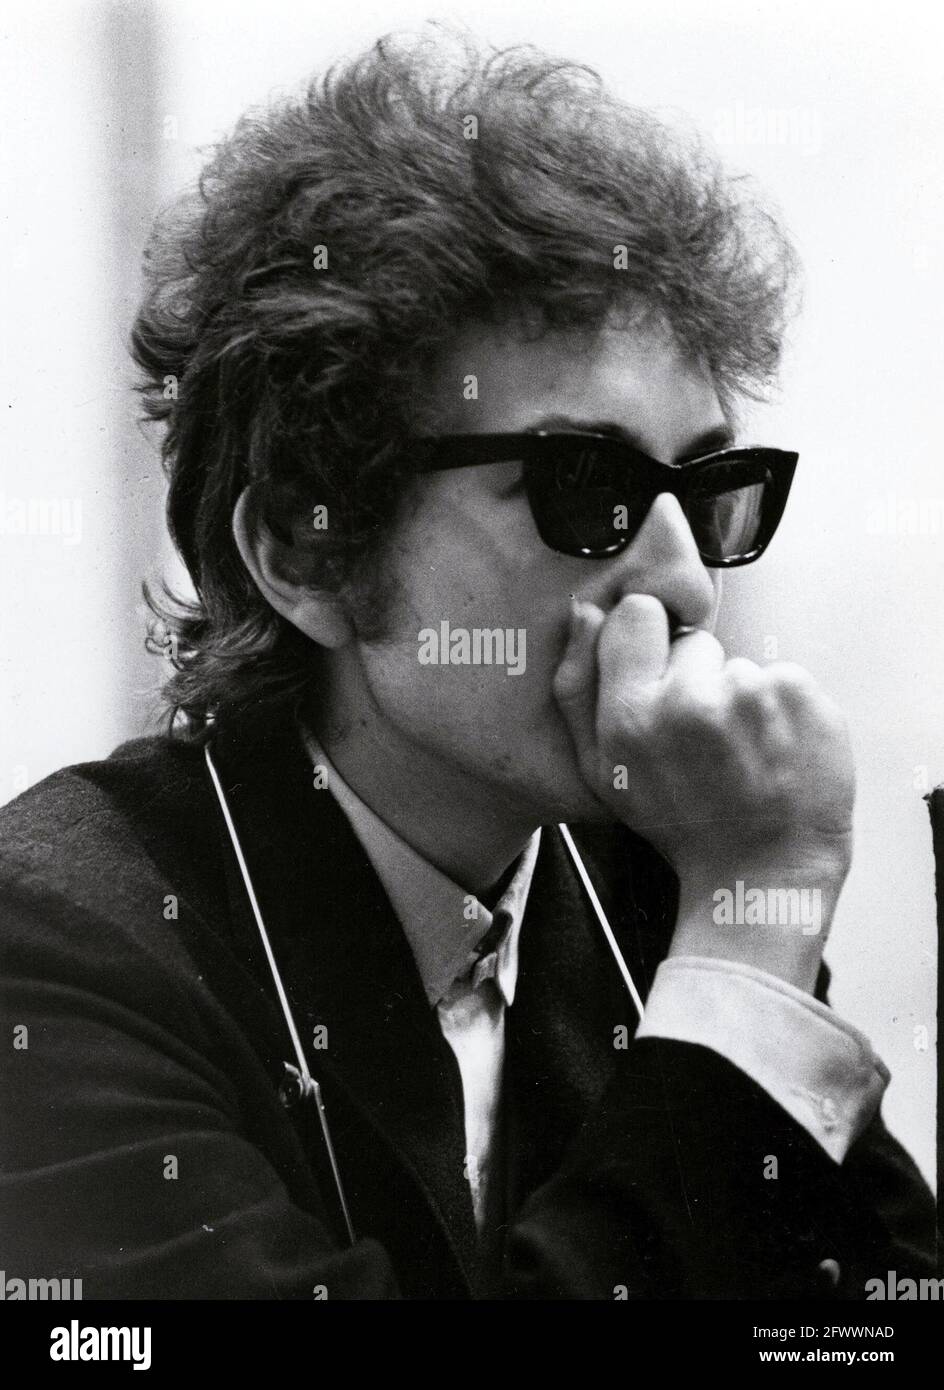 Vers 1965, Los Angeles, Californie, Etats-Unis : chanteur BOB DYLAN avec  lunettes de soleil et harmonica. Le chanteur-compositeur américain, auteur  et artiste visuel Bob Dylan est considéré comme l'un des plus grands